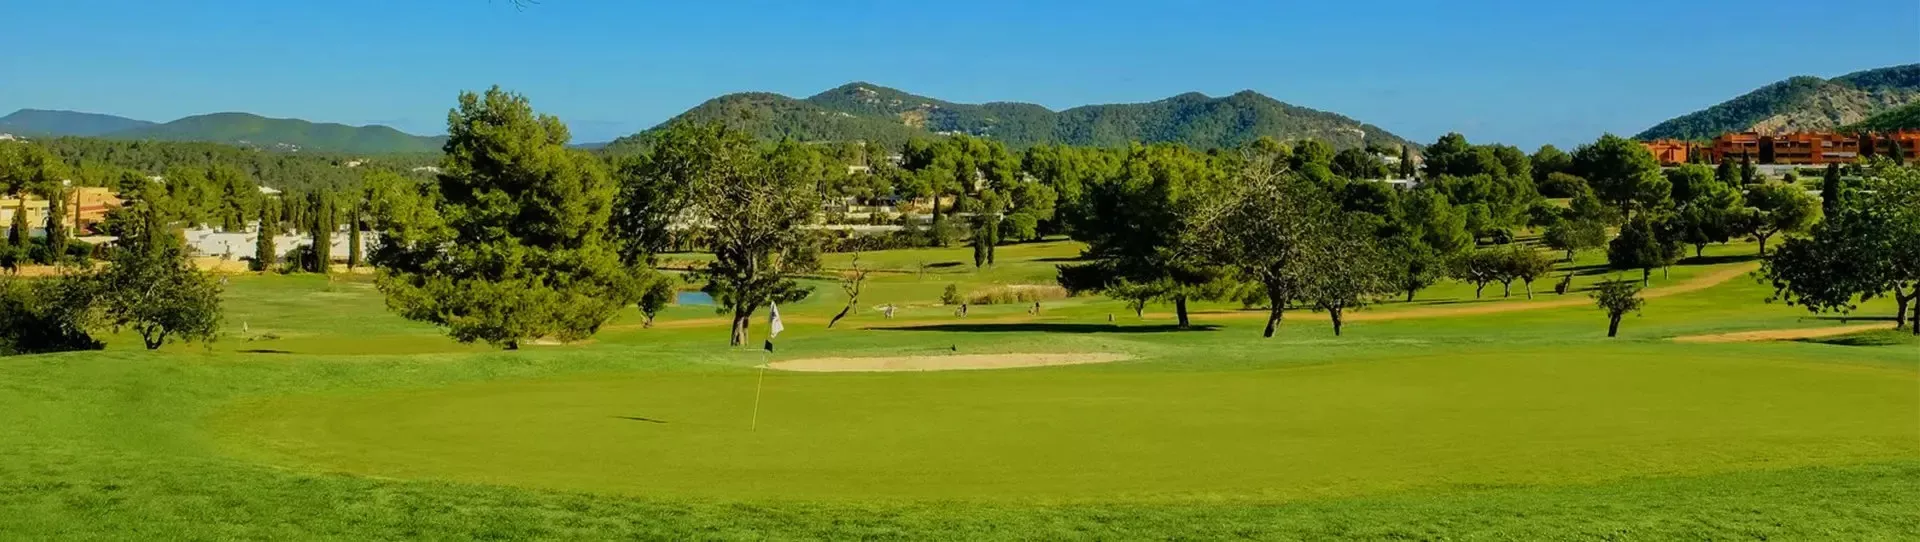 Spain golf courses - Golf de Ibiza II Roca Llisa - Photo 3